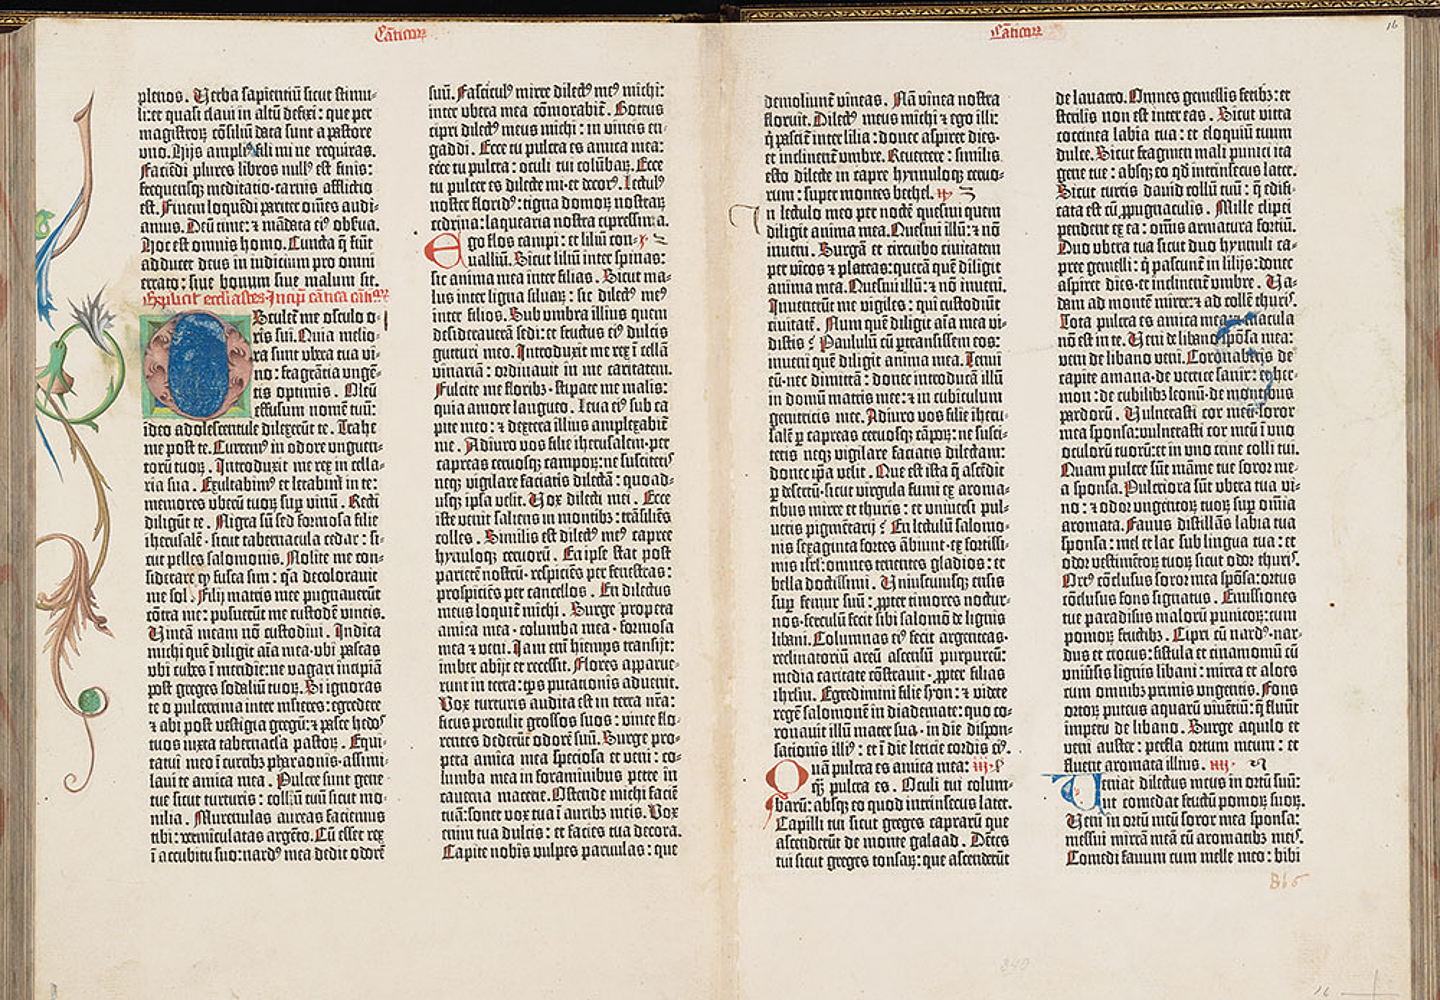 The Gutenberg Bible: An Interactive Spotlight Tour